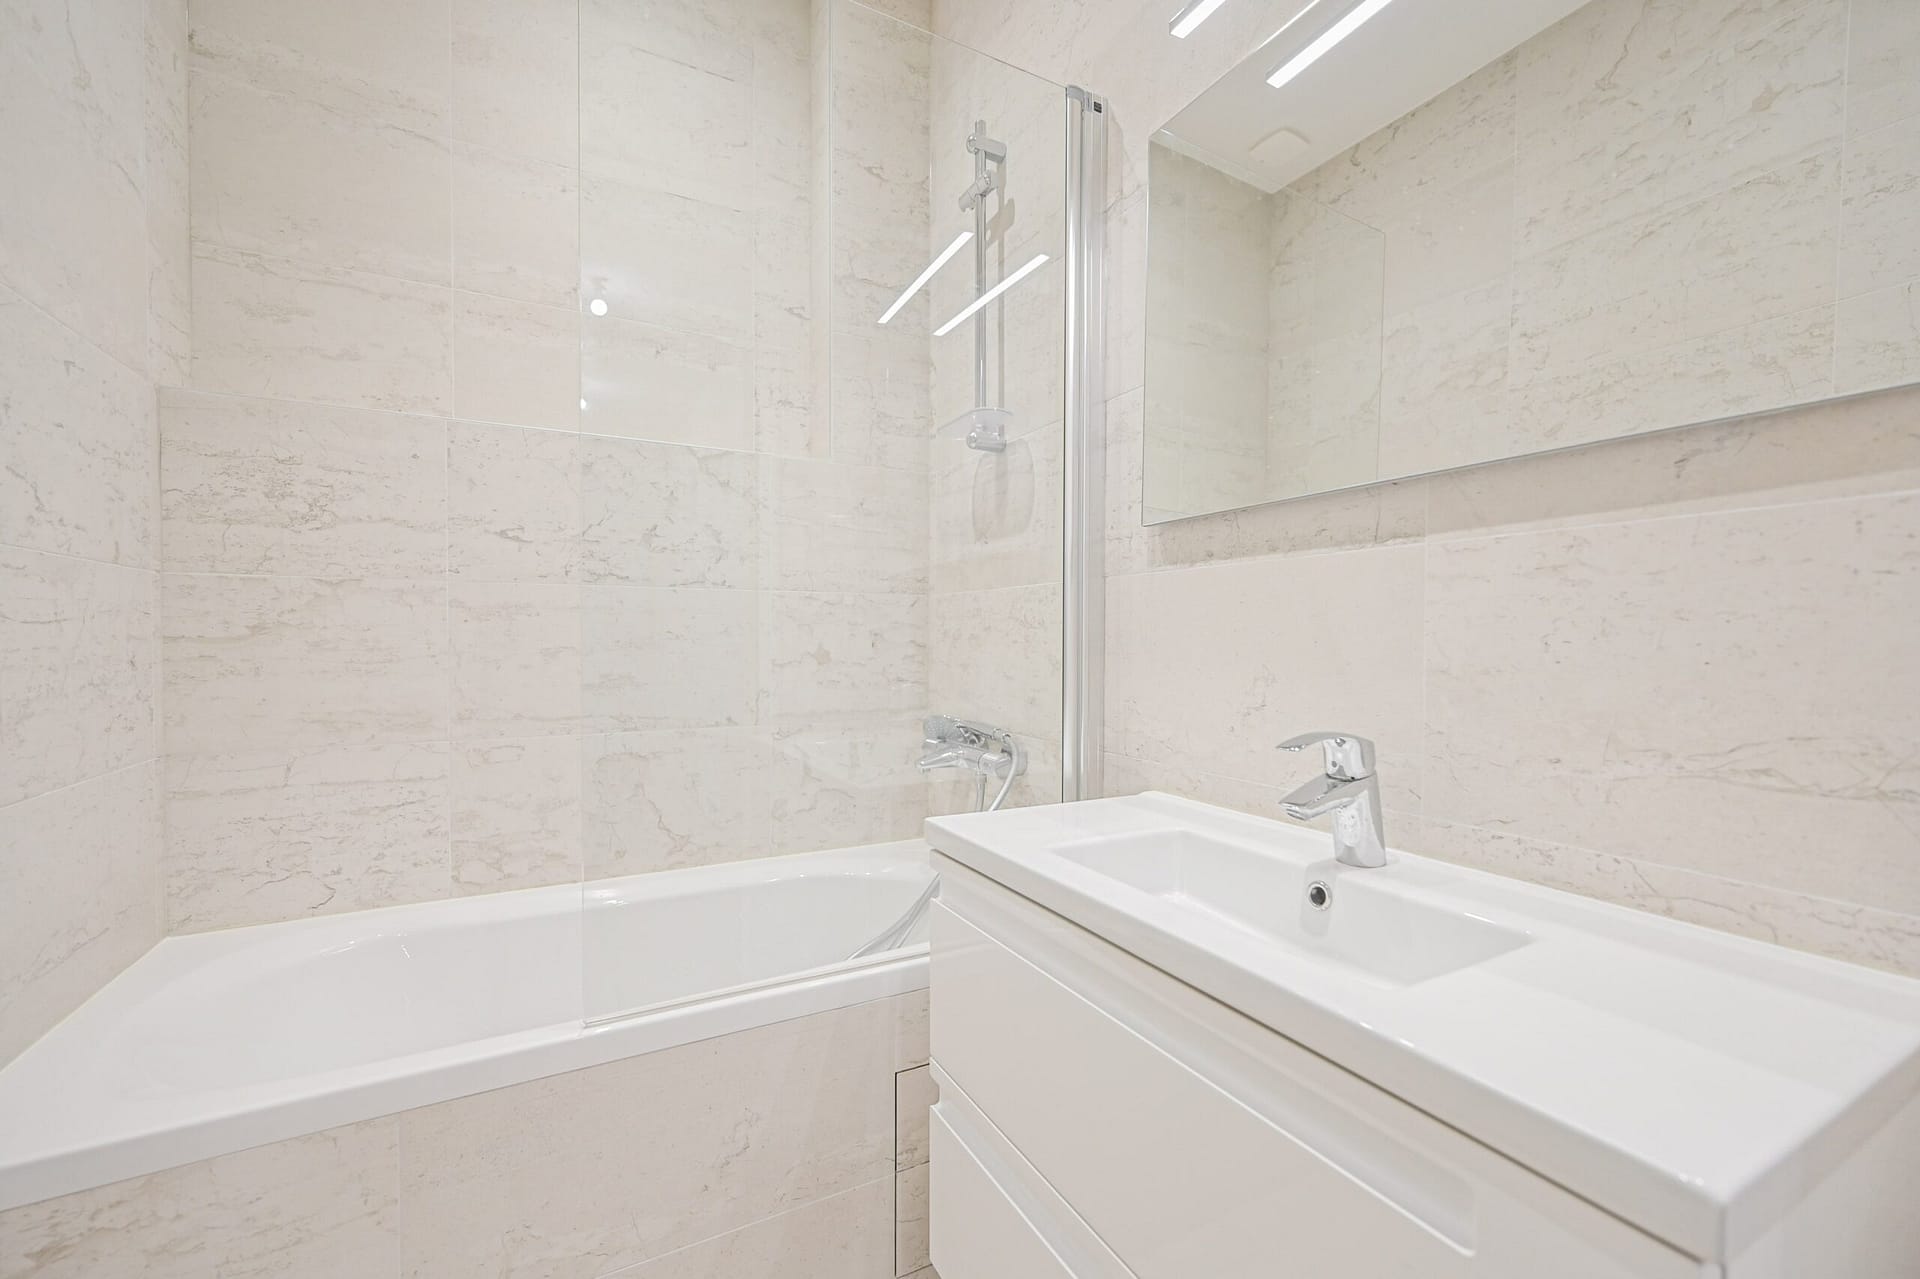 Salle de bains avec baignoire et vasque d'un appartement situé à Paris 15ème métro Motte Picquet Grenelle